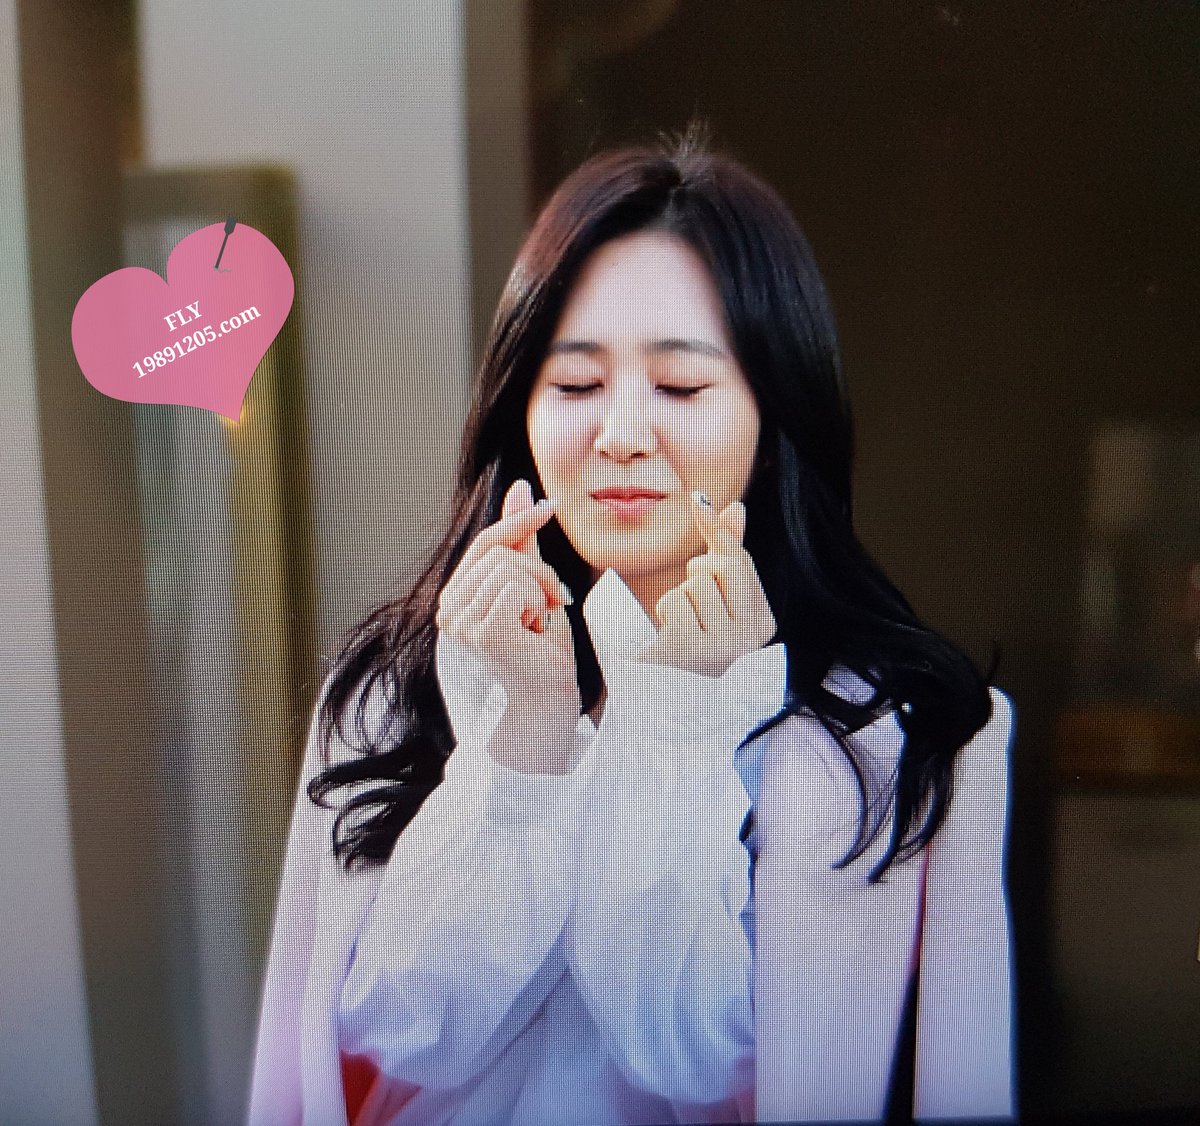 [PIC][09-10-2016]Yuri tham dự buổi Fansign thứ 2 cho thương hiệu nước hoa "BVLGARI Rose Goldea" tại Myeongdong Lotte Duty Free vào chiều nay - Page 3 CuT36eIUMAAzqOi